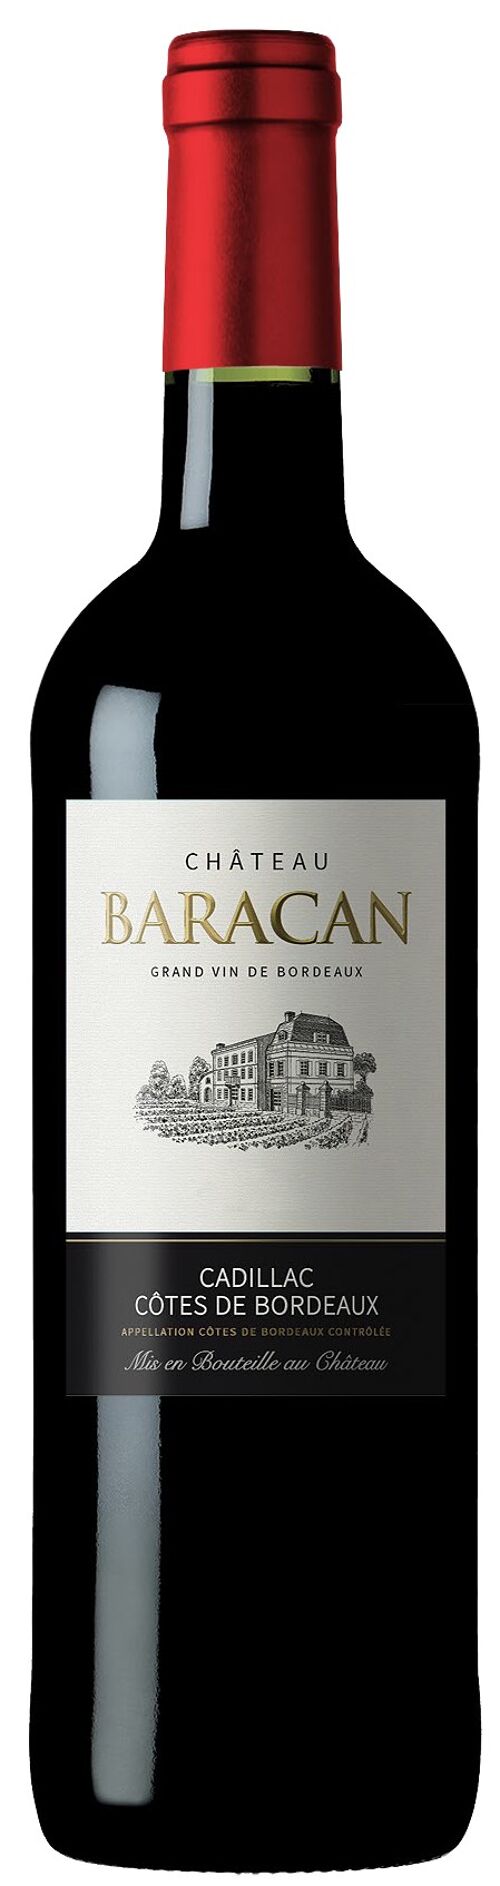 Château Baracan 2019 Cadillac Cotes de Bordeaux